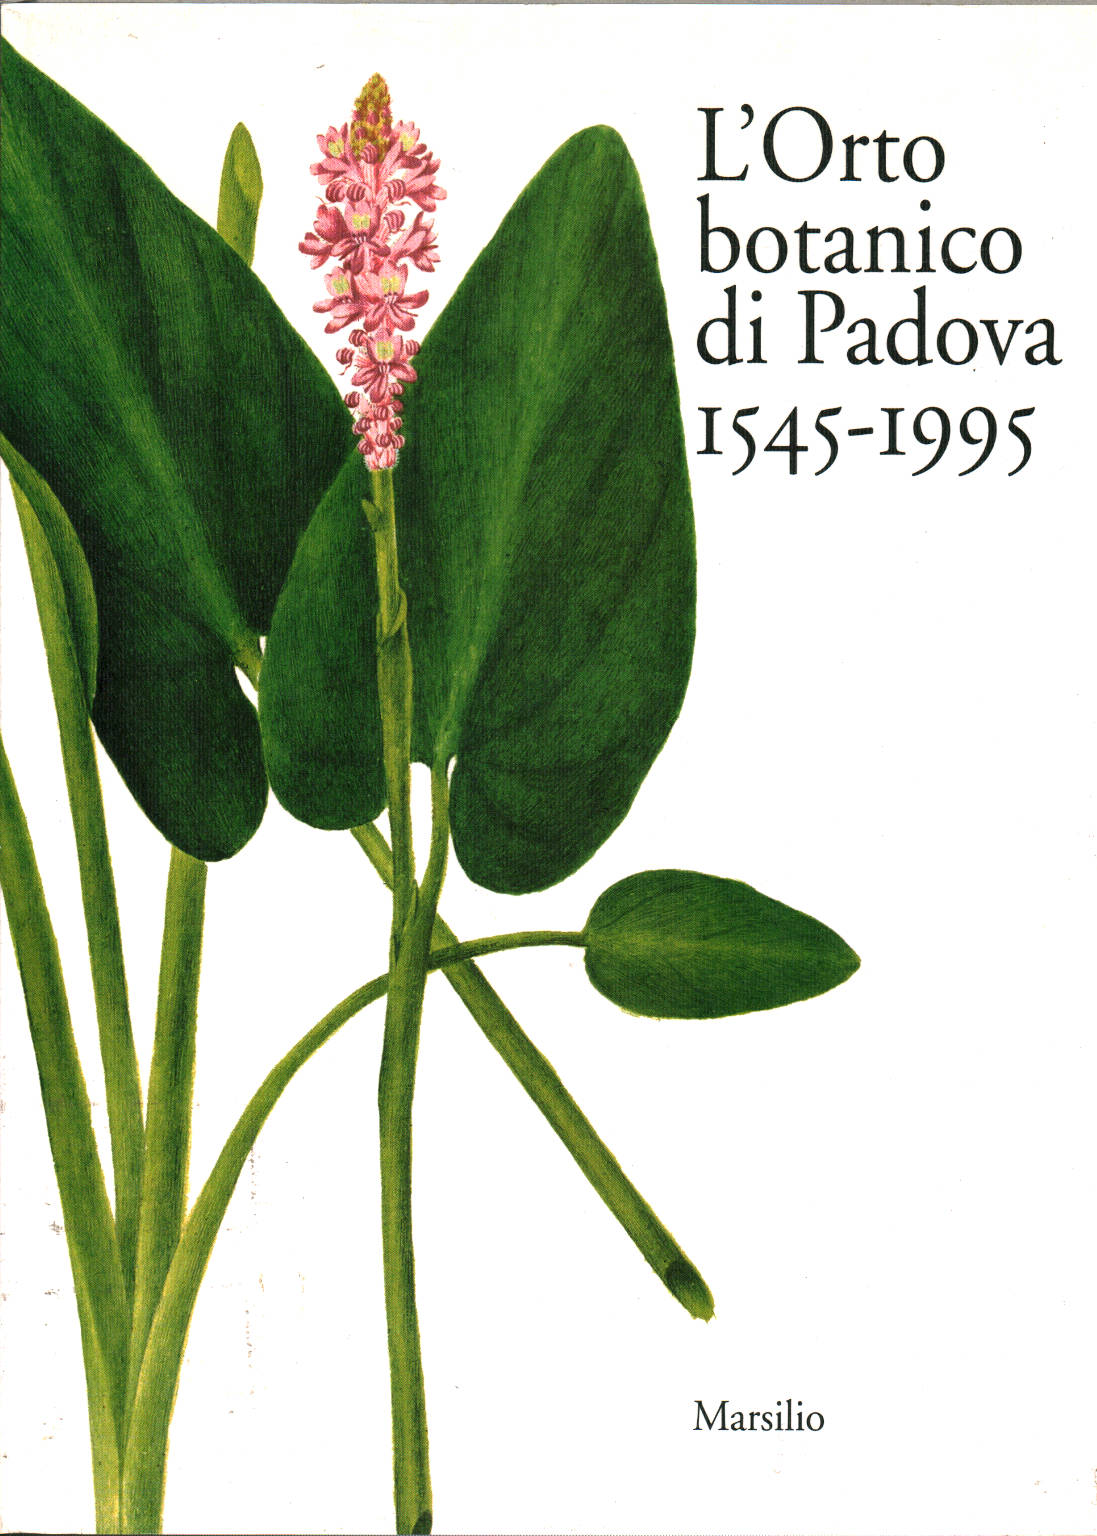 L'Orto botanico di Padova 1545-1995, Alessandro Minelli